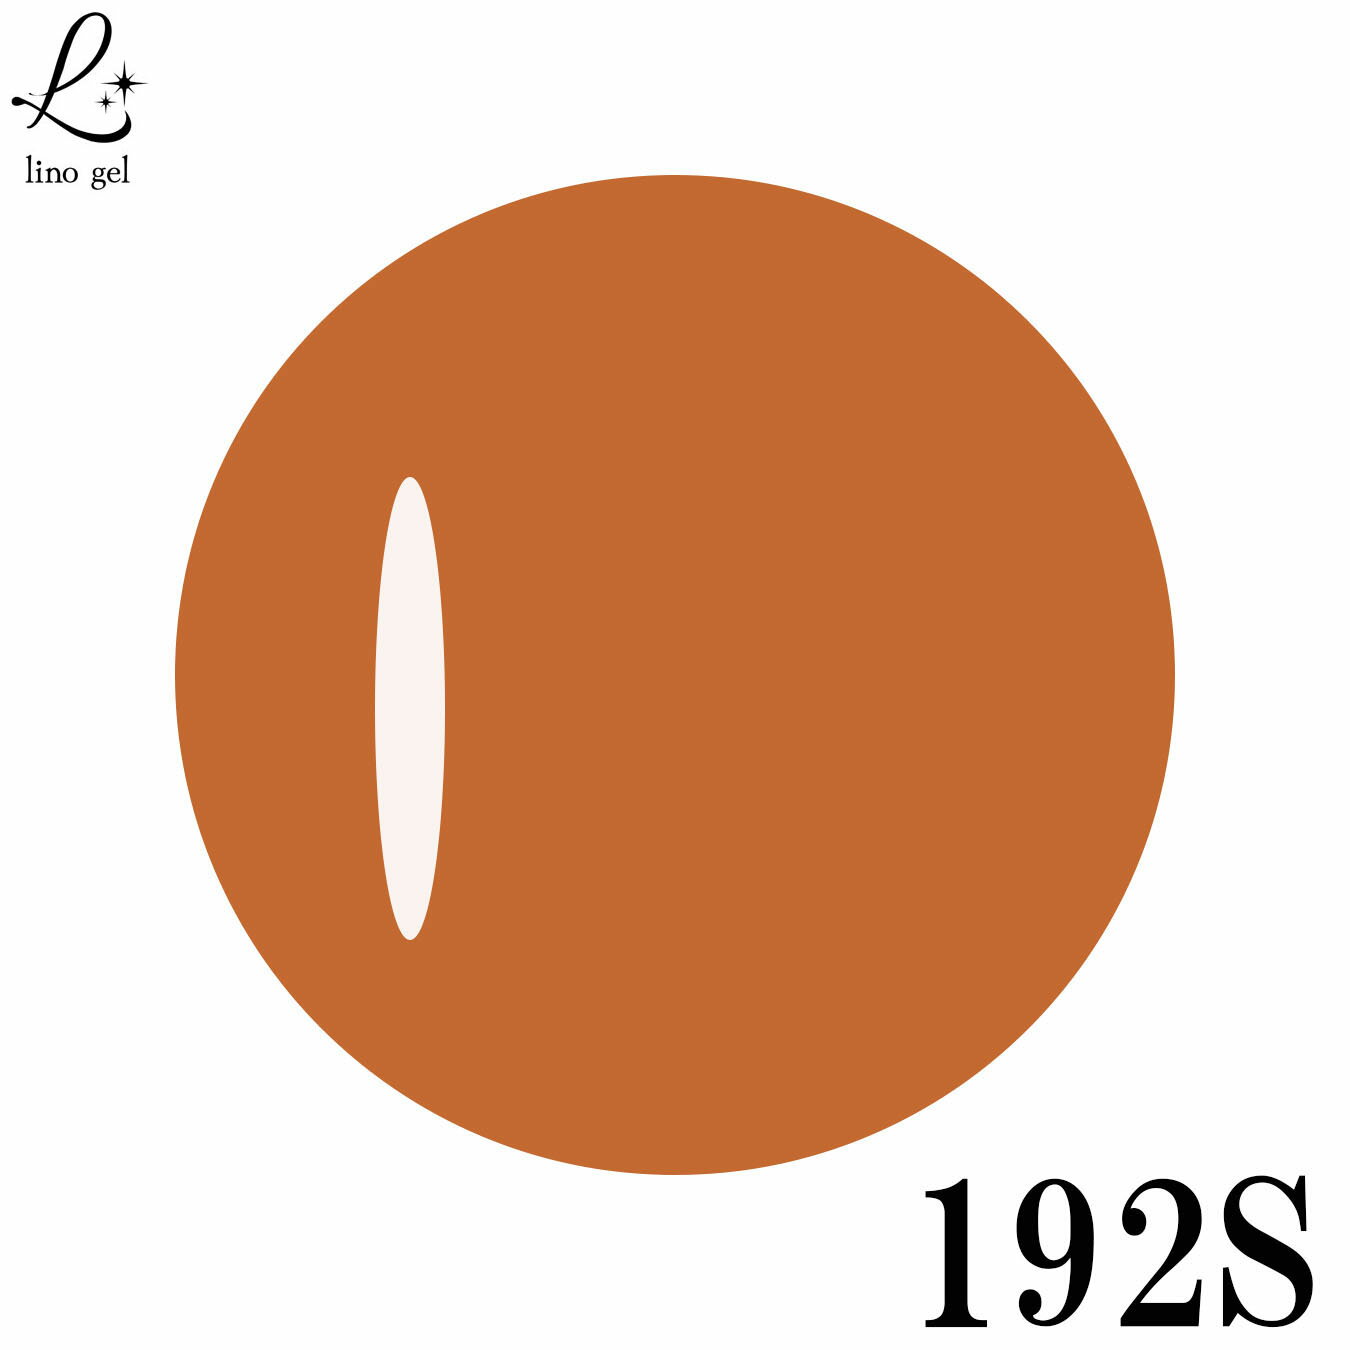 LinoGel リノジェル カラージェル 5g LED/UVライト対応 192S キャロットオレンジ carrot orange プロフェショナル ジェルネイル カラー ネイル ジェルネイルカラー ネイルアート 少し赤みかかったオレンジ色